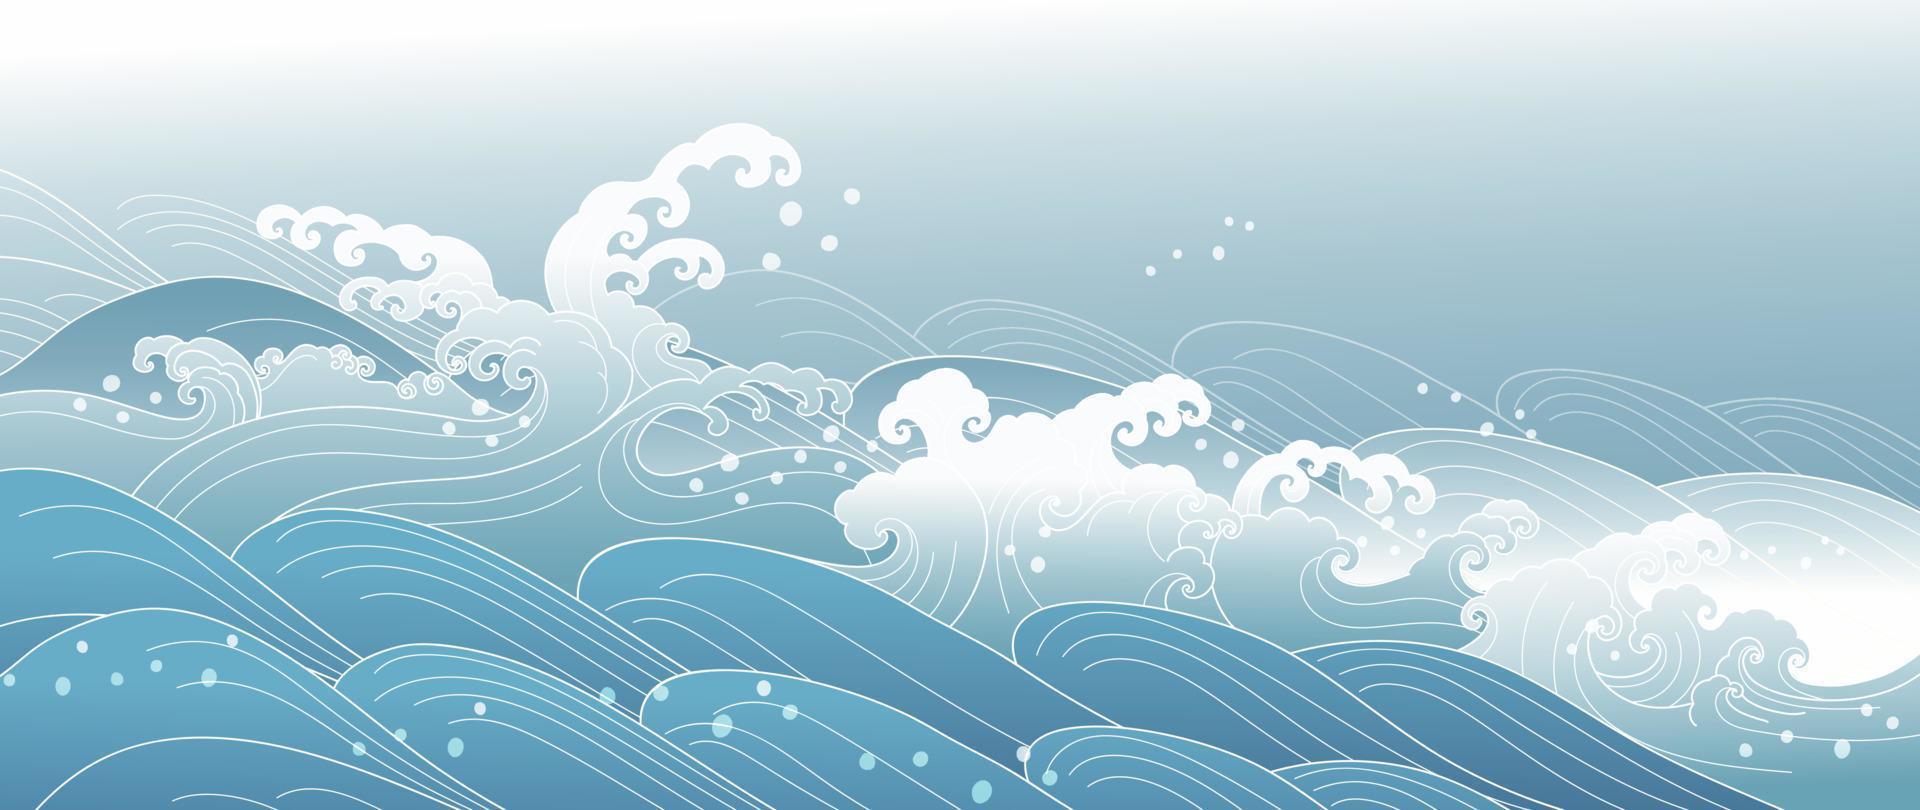 traditioneller japanischer wellenmustervektor. luxus handgezeichnete orientalische ozeanwellenspritzlinie kunstmusterhintergrund. Kunstdesignillustration für Druck, Stoff, Poster, Heimtextilien und Tapeten. vektor